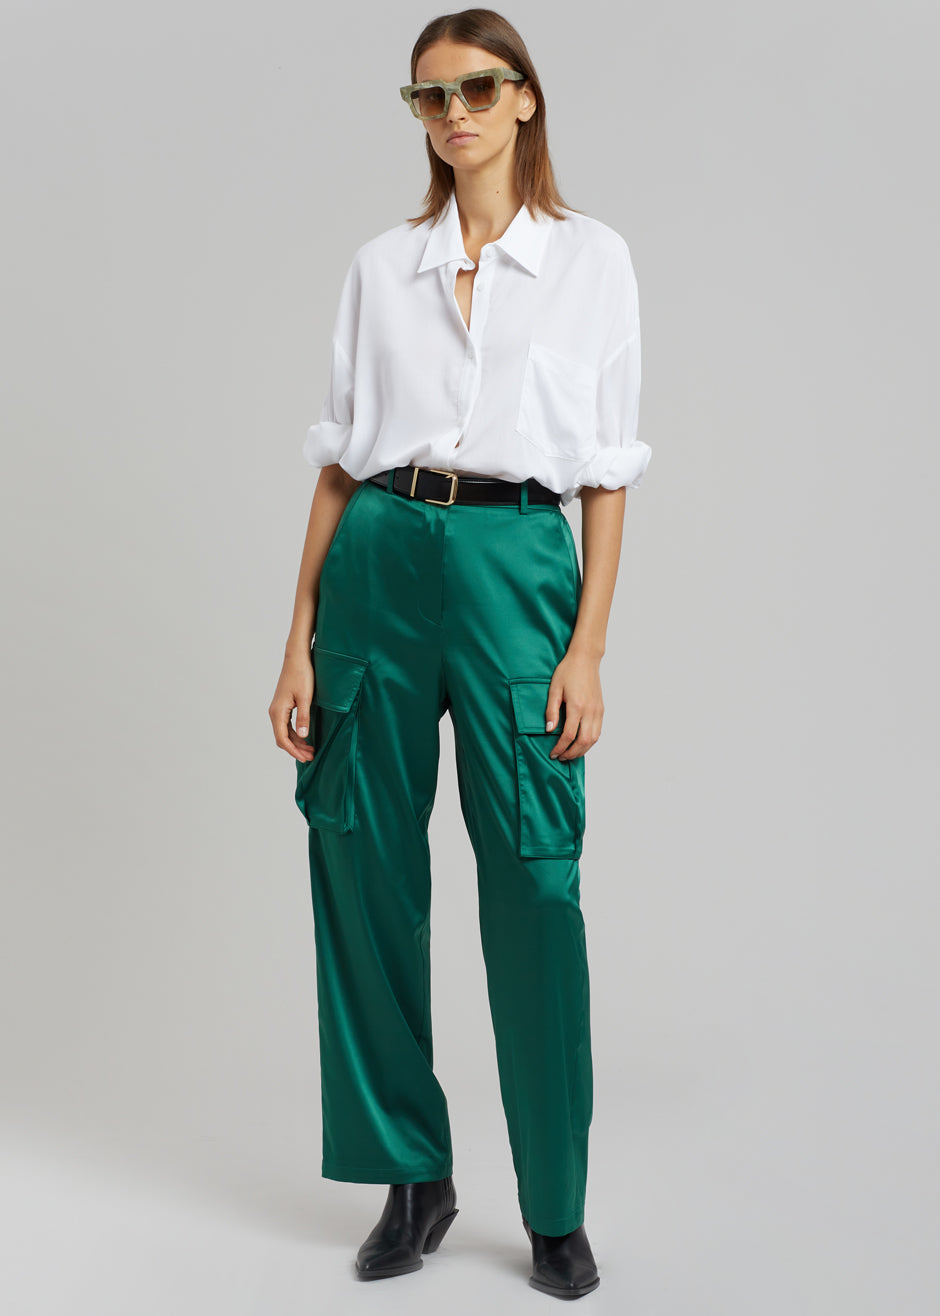 Lauren Silky Cargo Pants - Green - 1